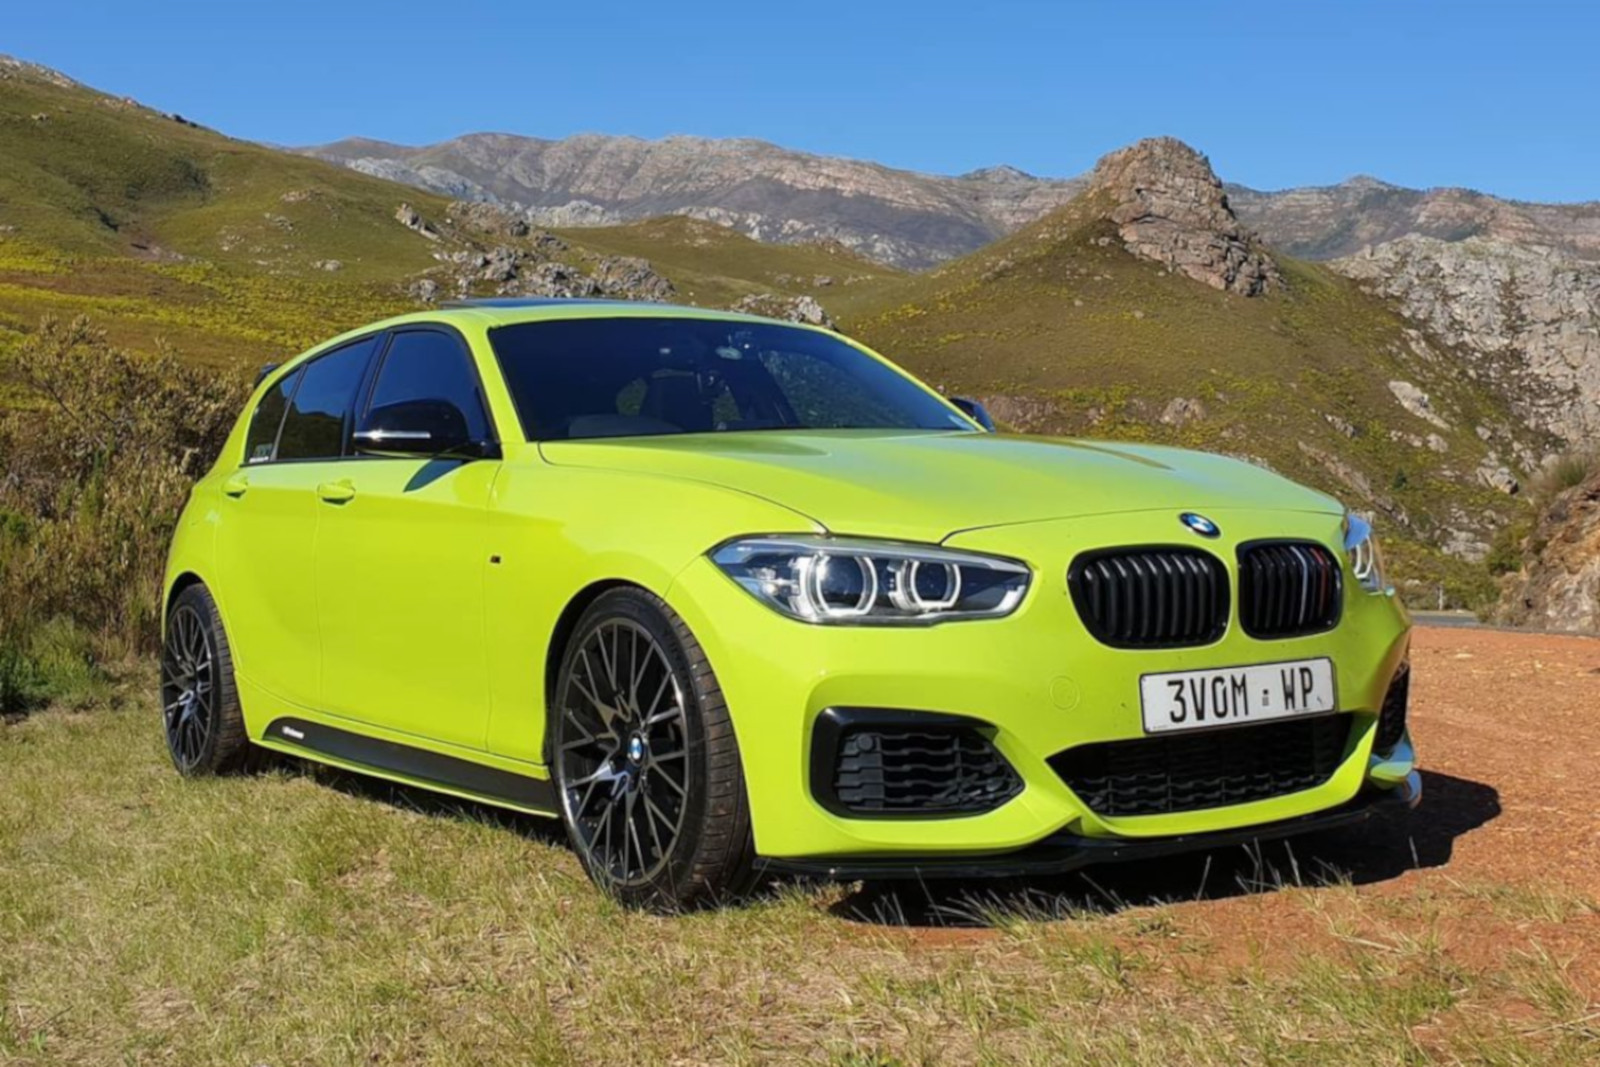 BMW 1er F20 LCI in Birch Green: Sprüh-Folie bringt Farbe ins Spiel